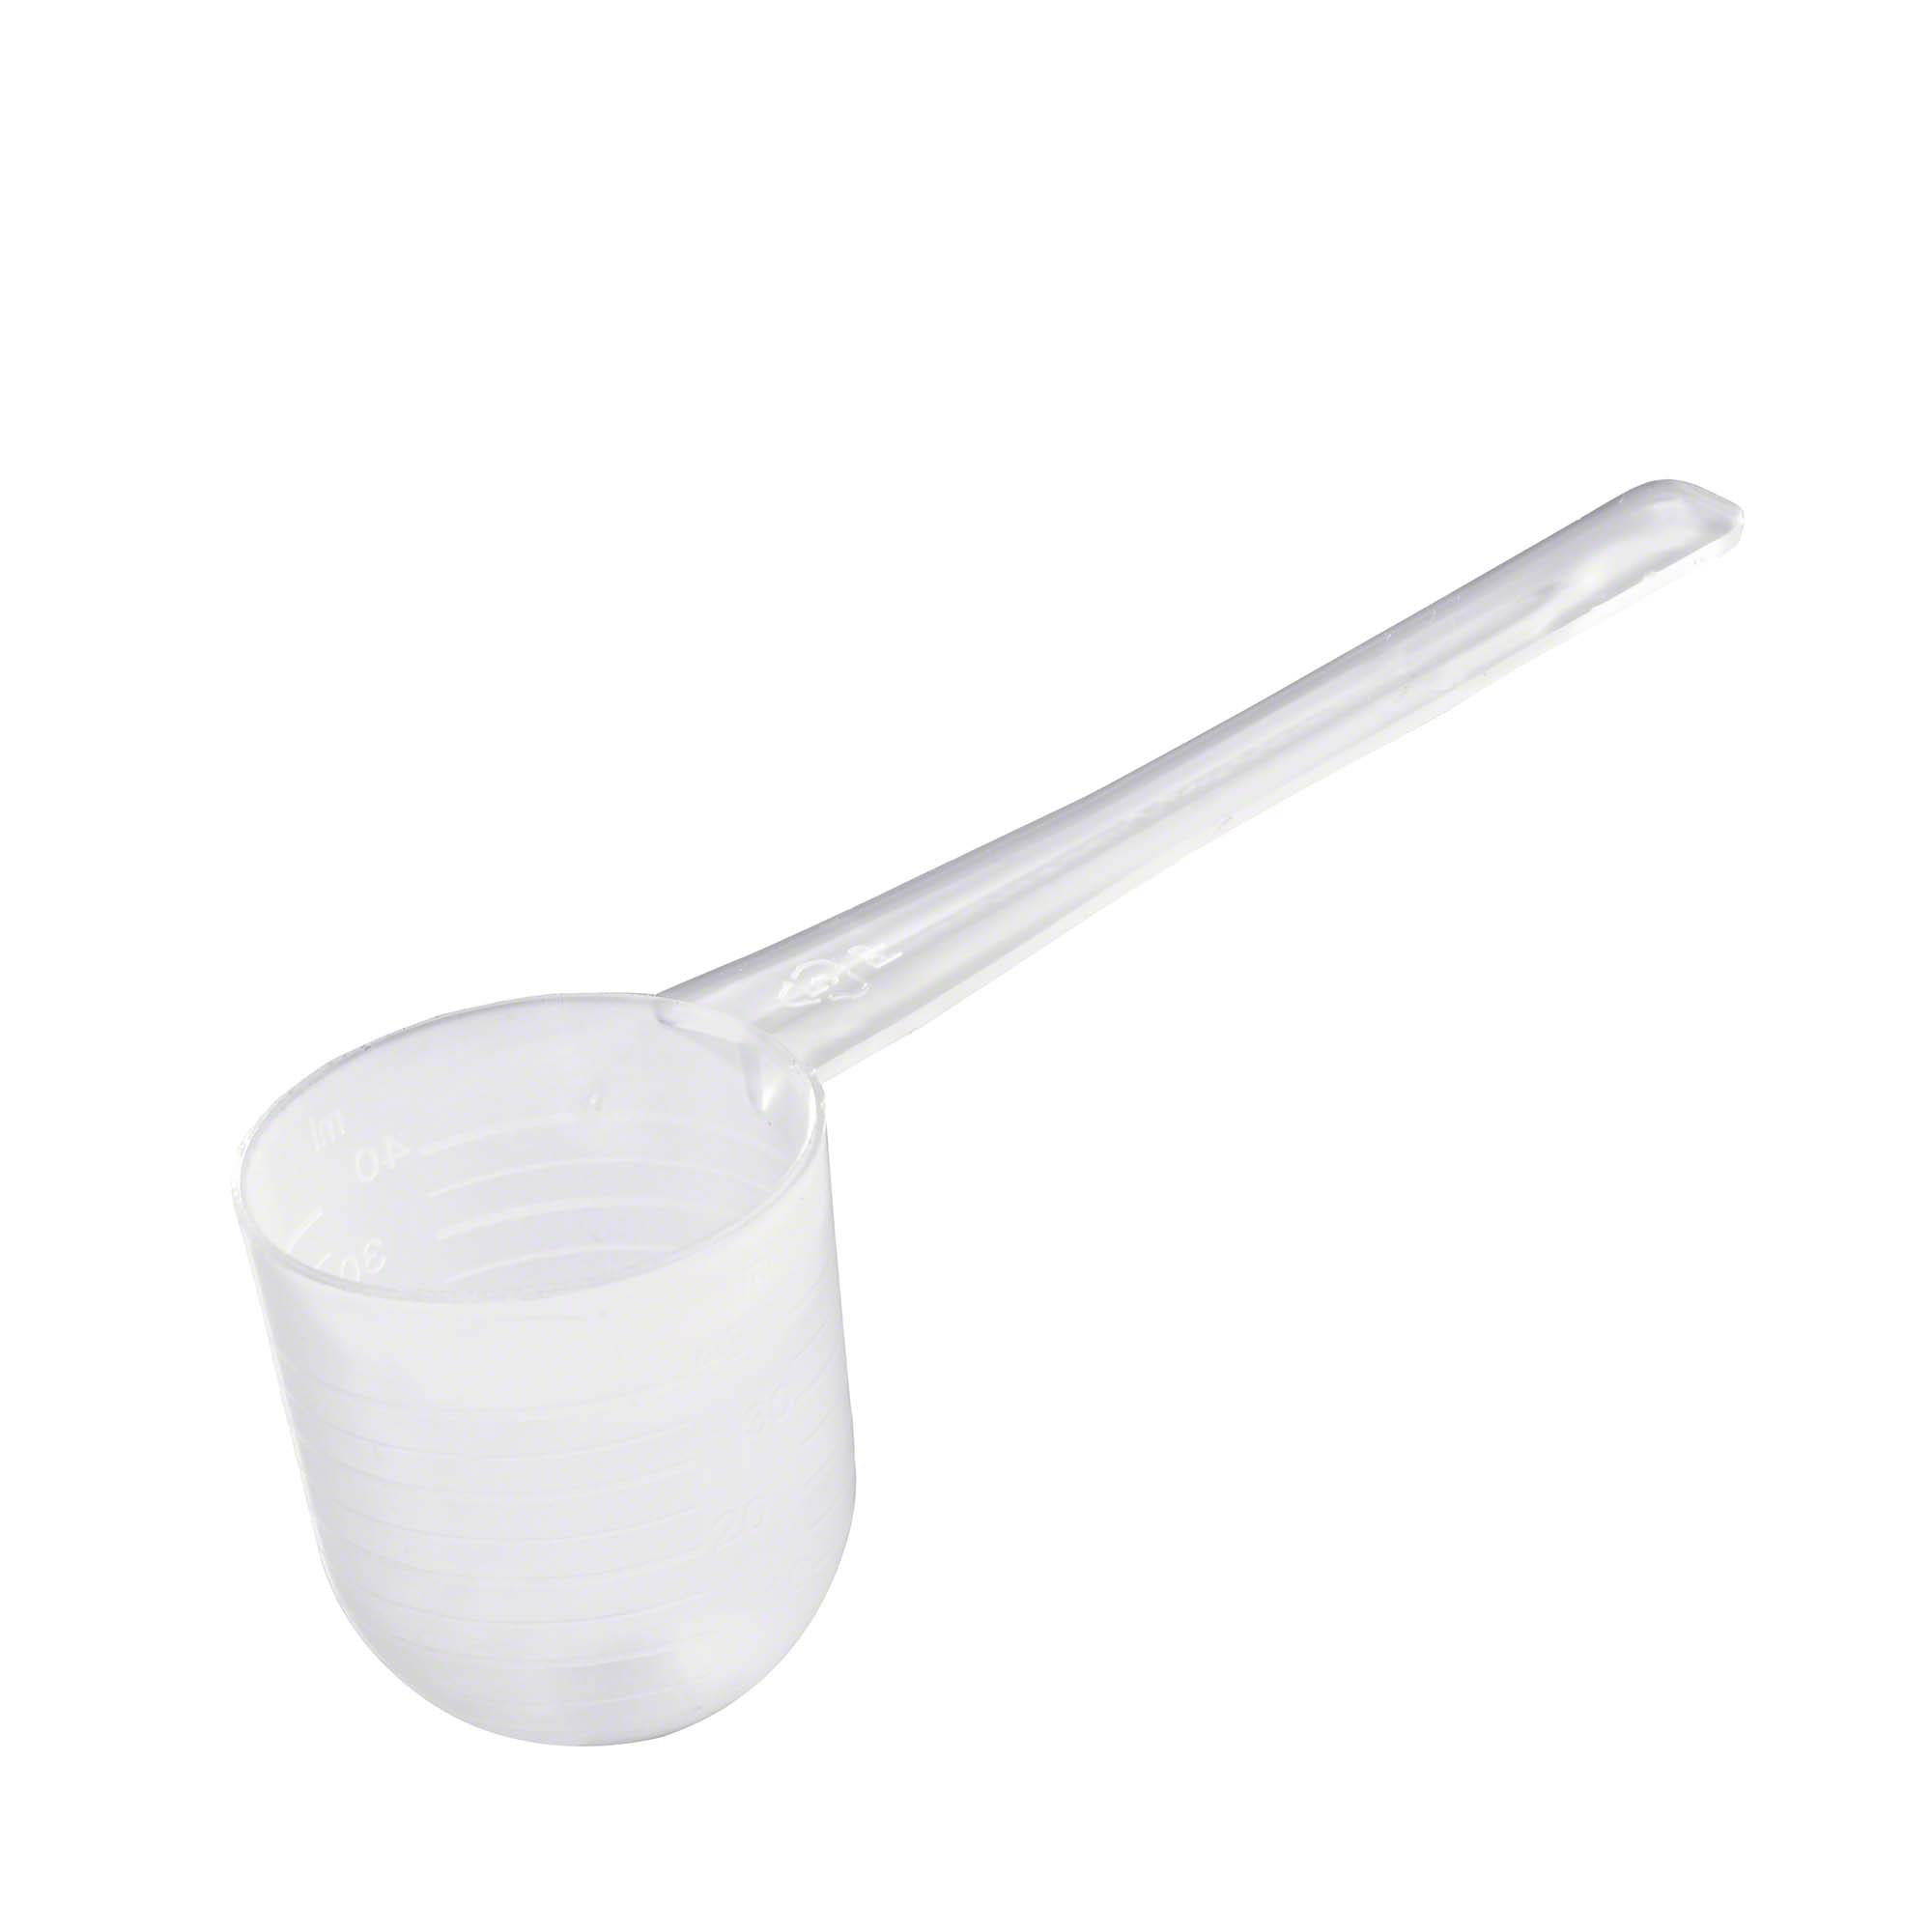 Measuring spoon - balancing powder